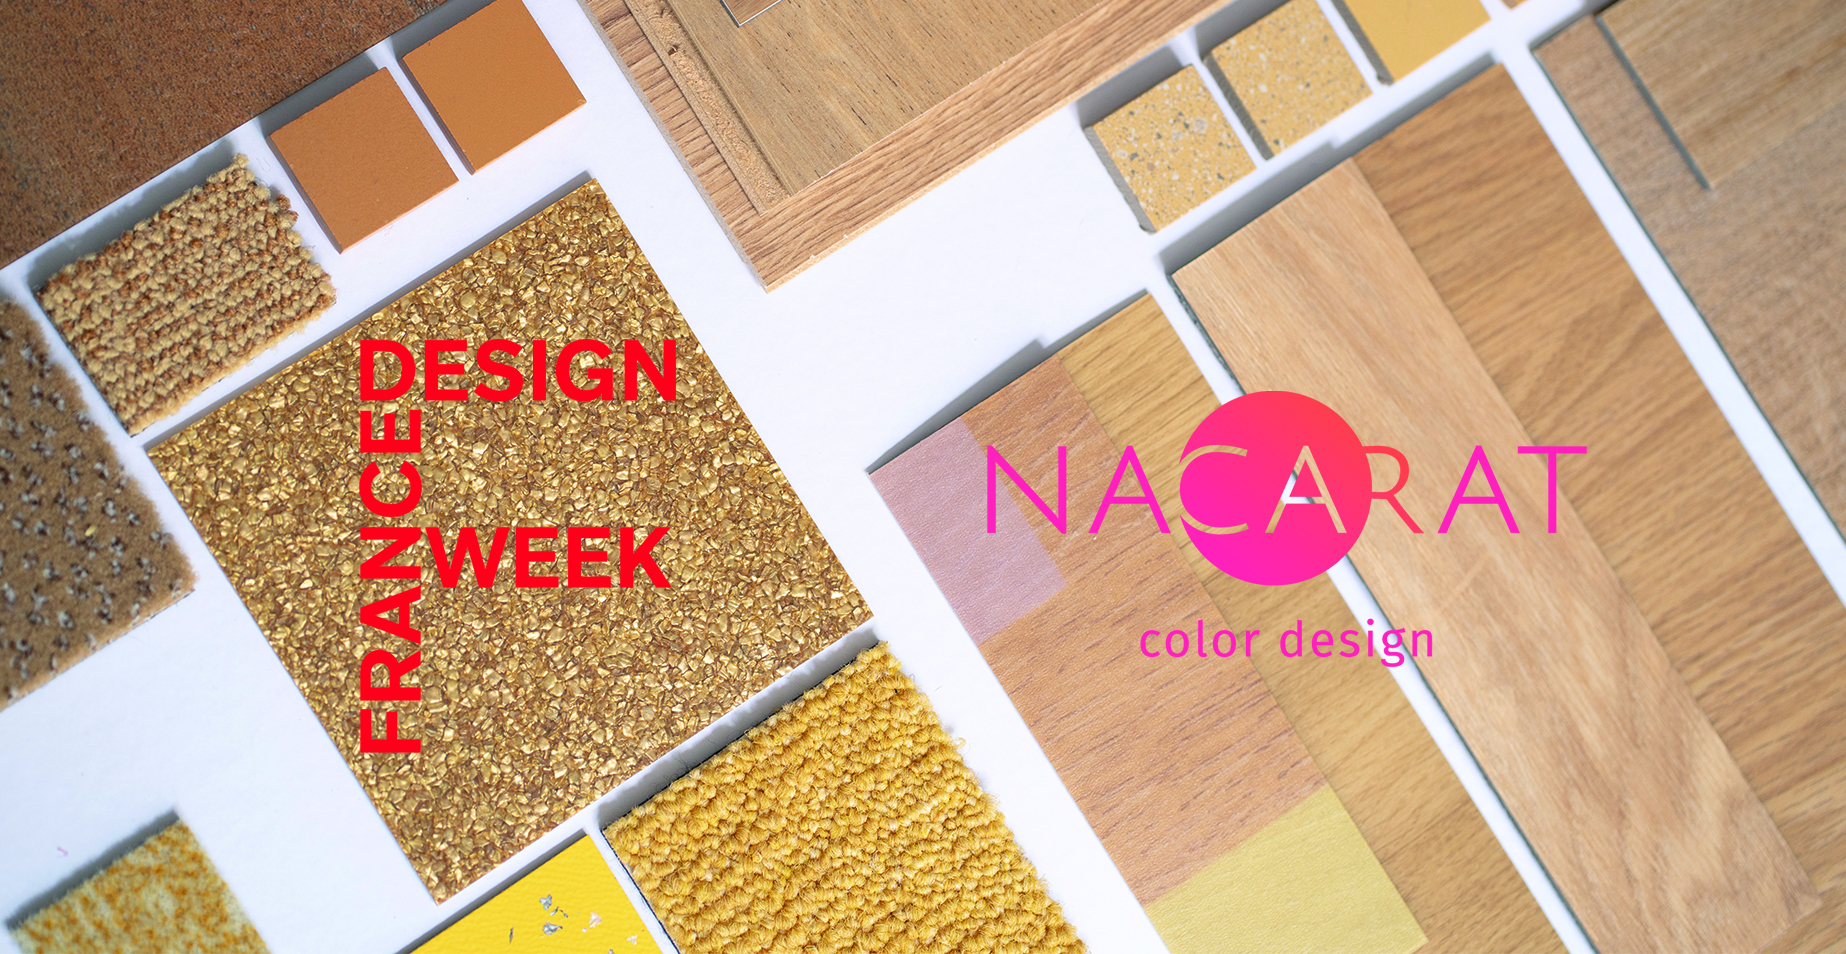 France Design Week 2022_Nacarat Color Design